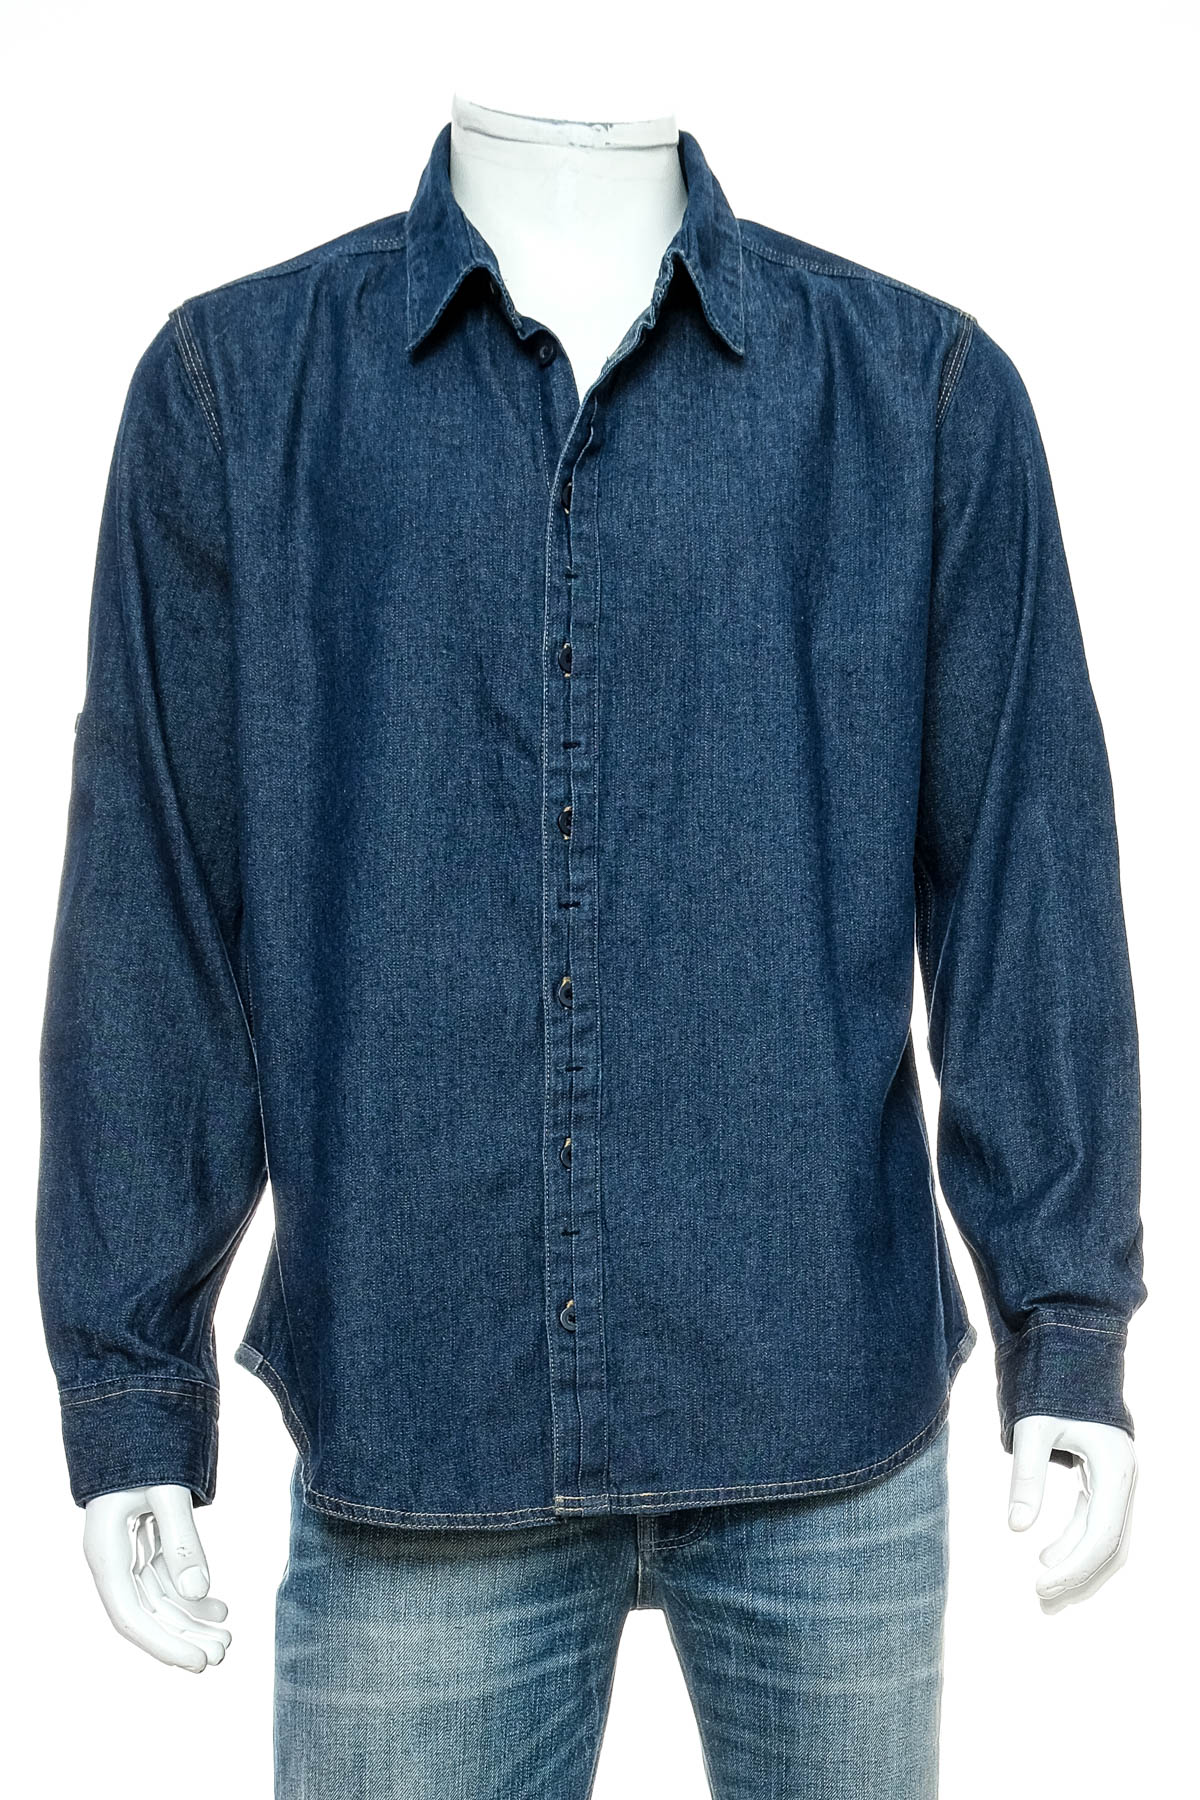 Ανδρικό τζιν πουκάμισο - B&C Collection - 0